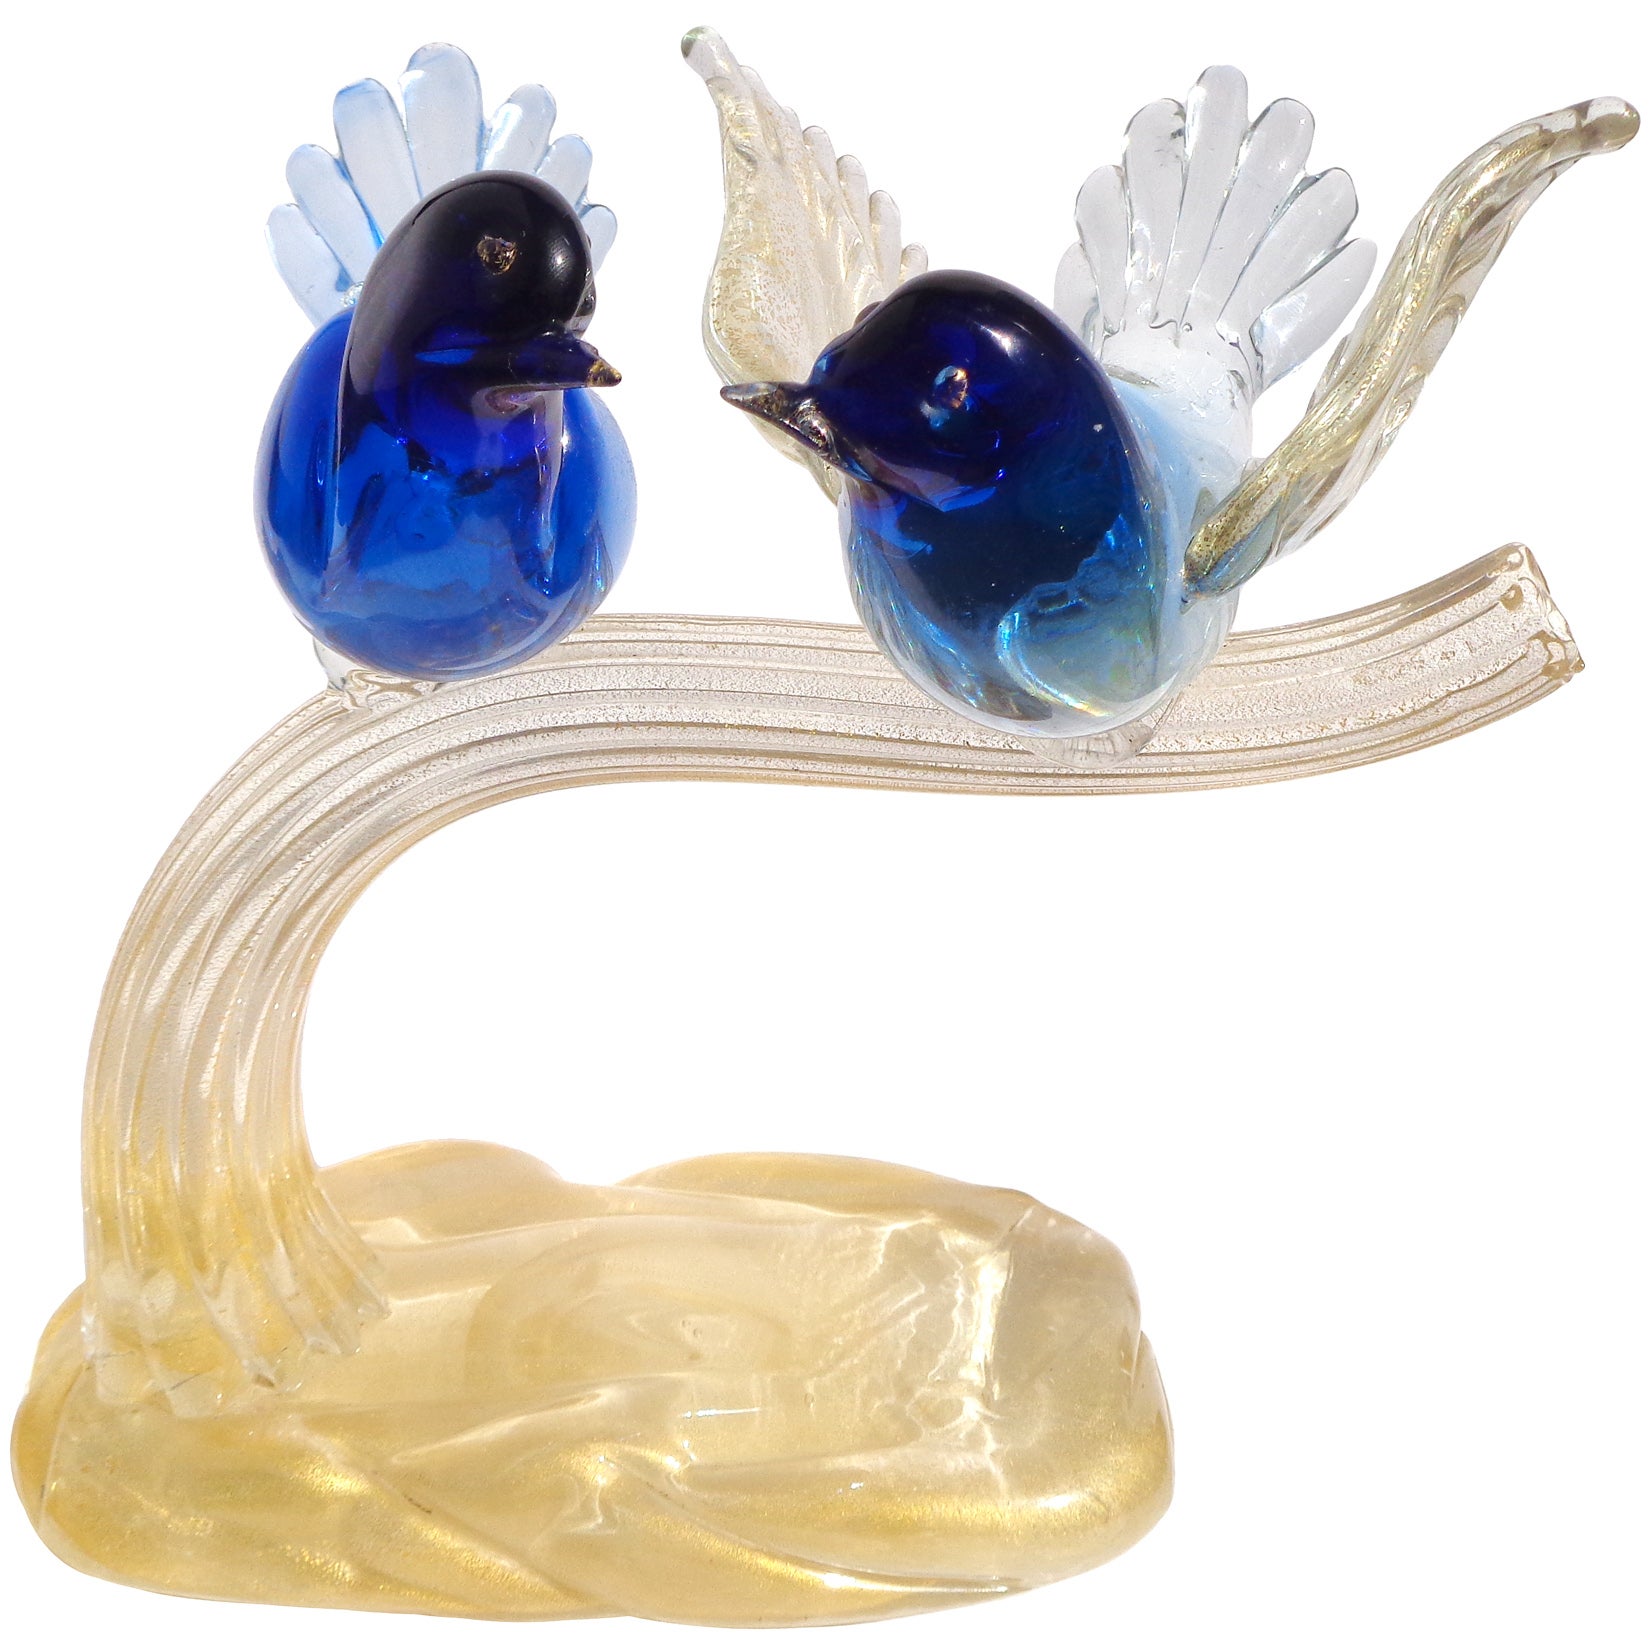 murano glass bird,seagull glass figurine,glass art birds,bird lover gift,home decor glass bird,collectible birds,miniature glass figurine